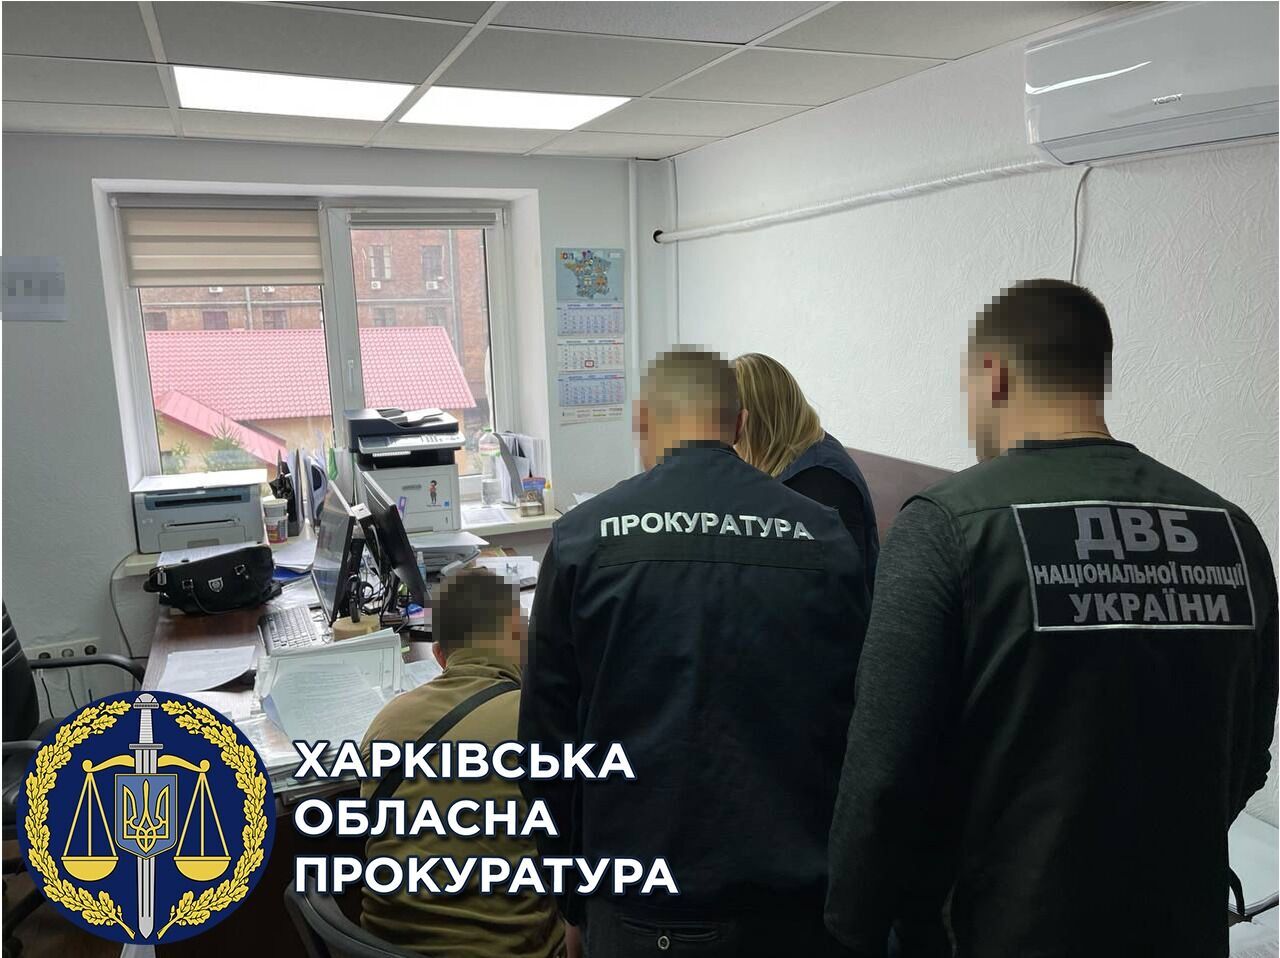 Побили та пограбували на 30 тис. грн  — повідомлено про підозру трьом патрульним (ФОТО)